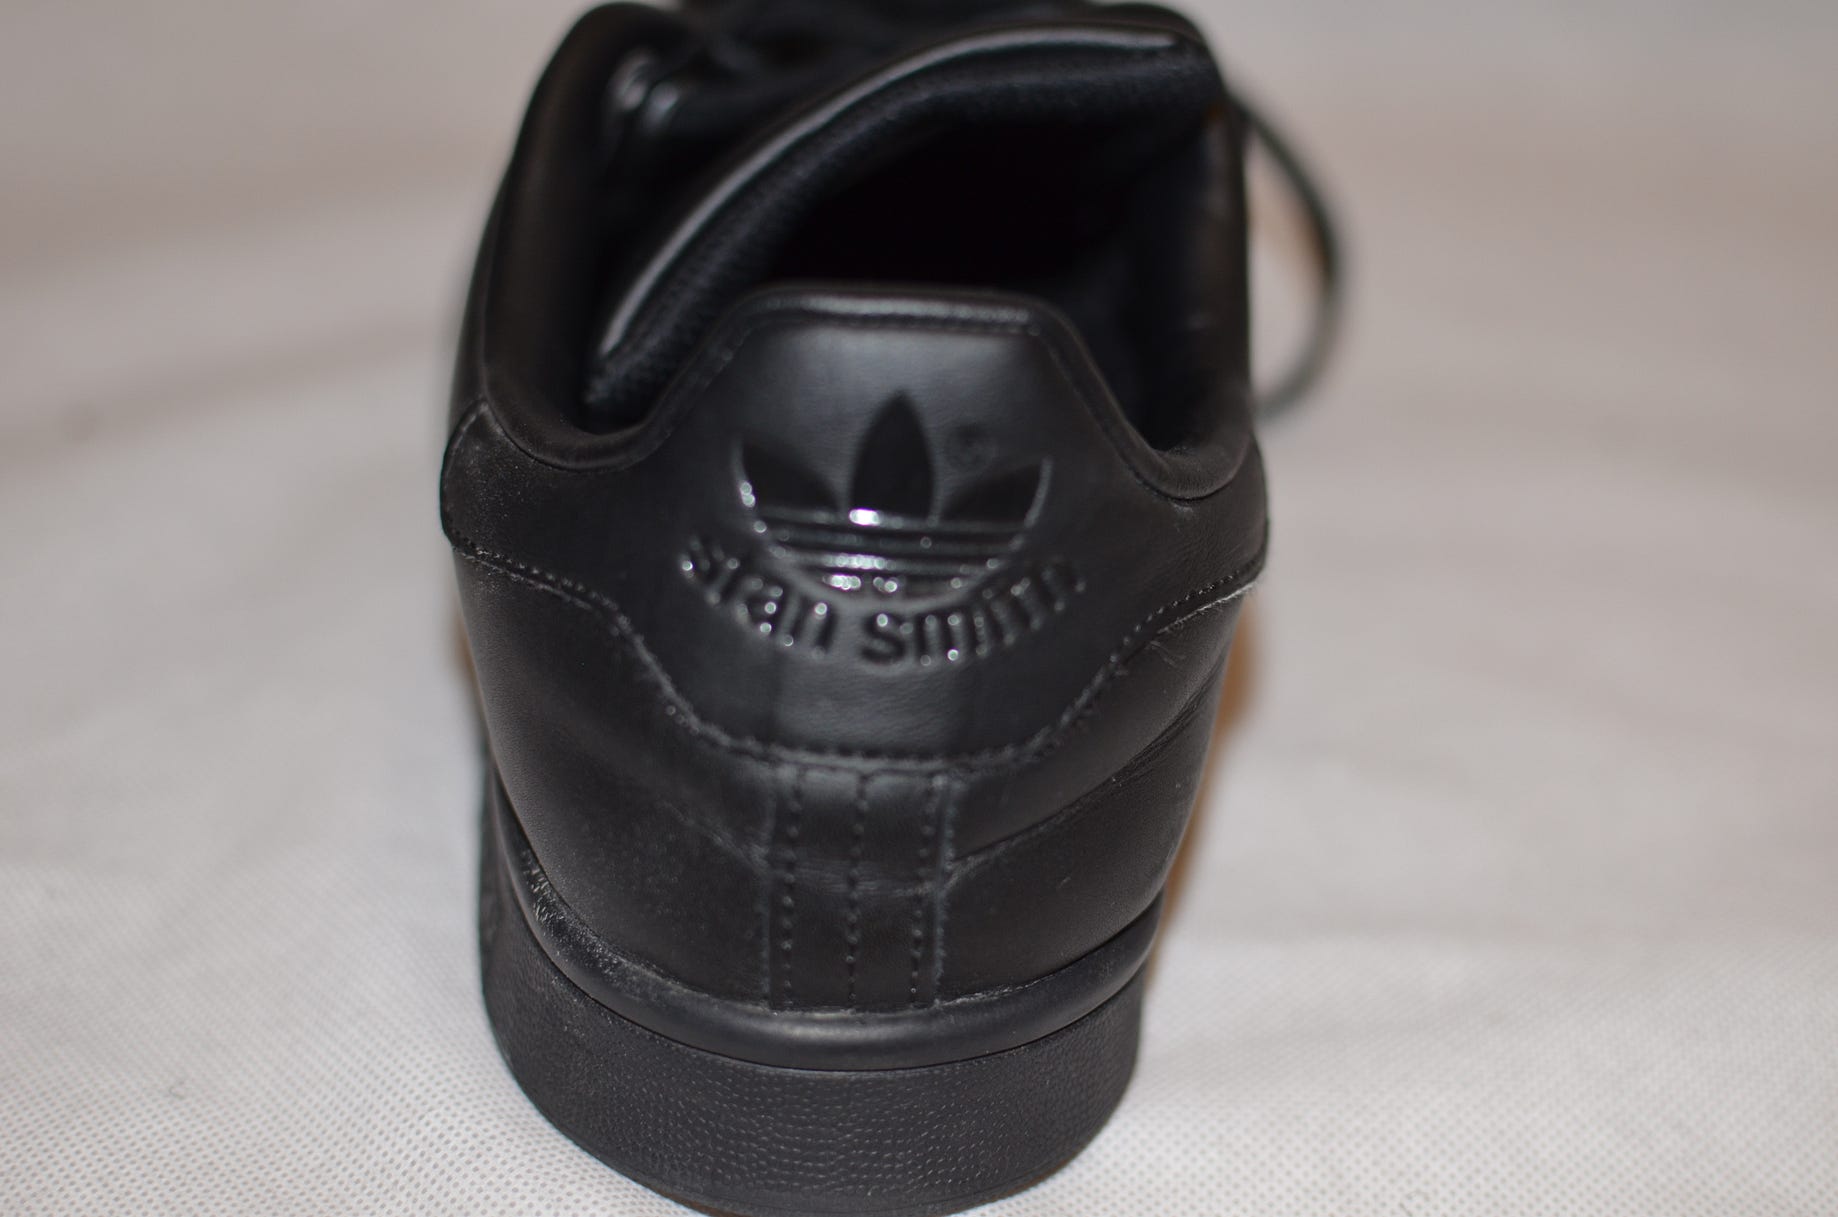 Adidas Stan Smith Review + On feet| ALL BLACK | by Tobiadey.eth | Medium